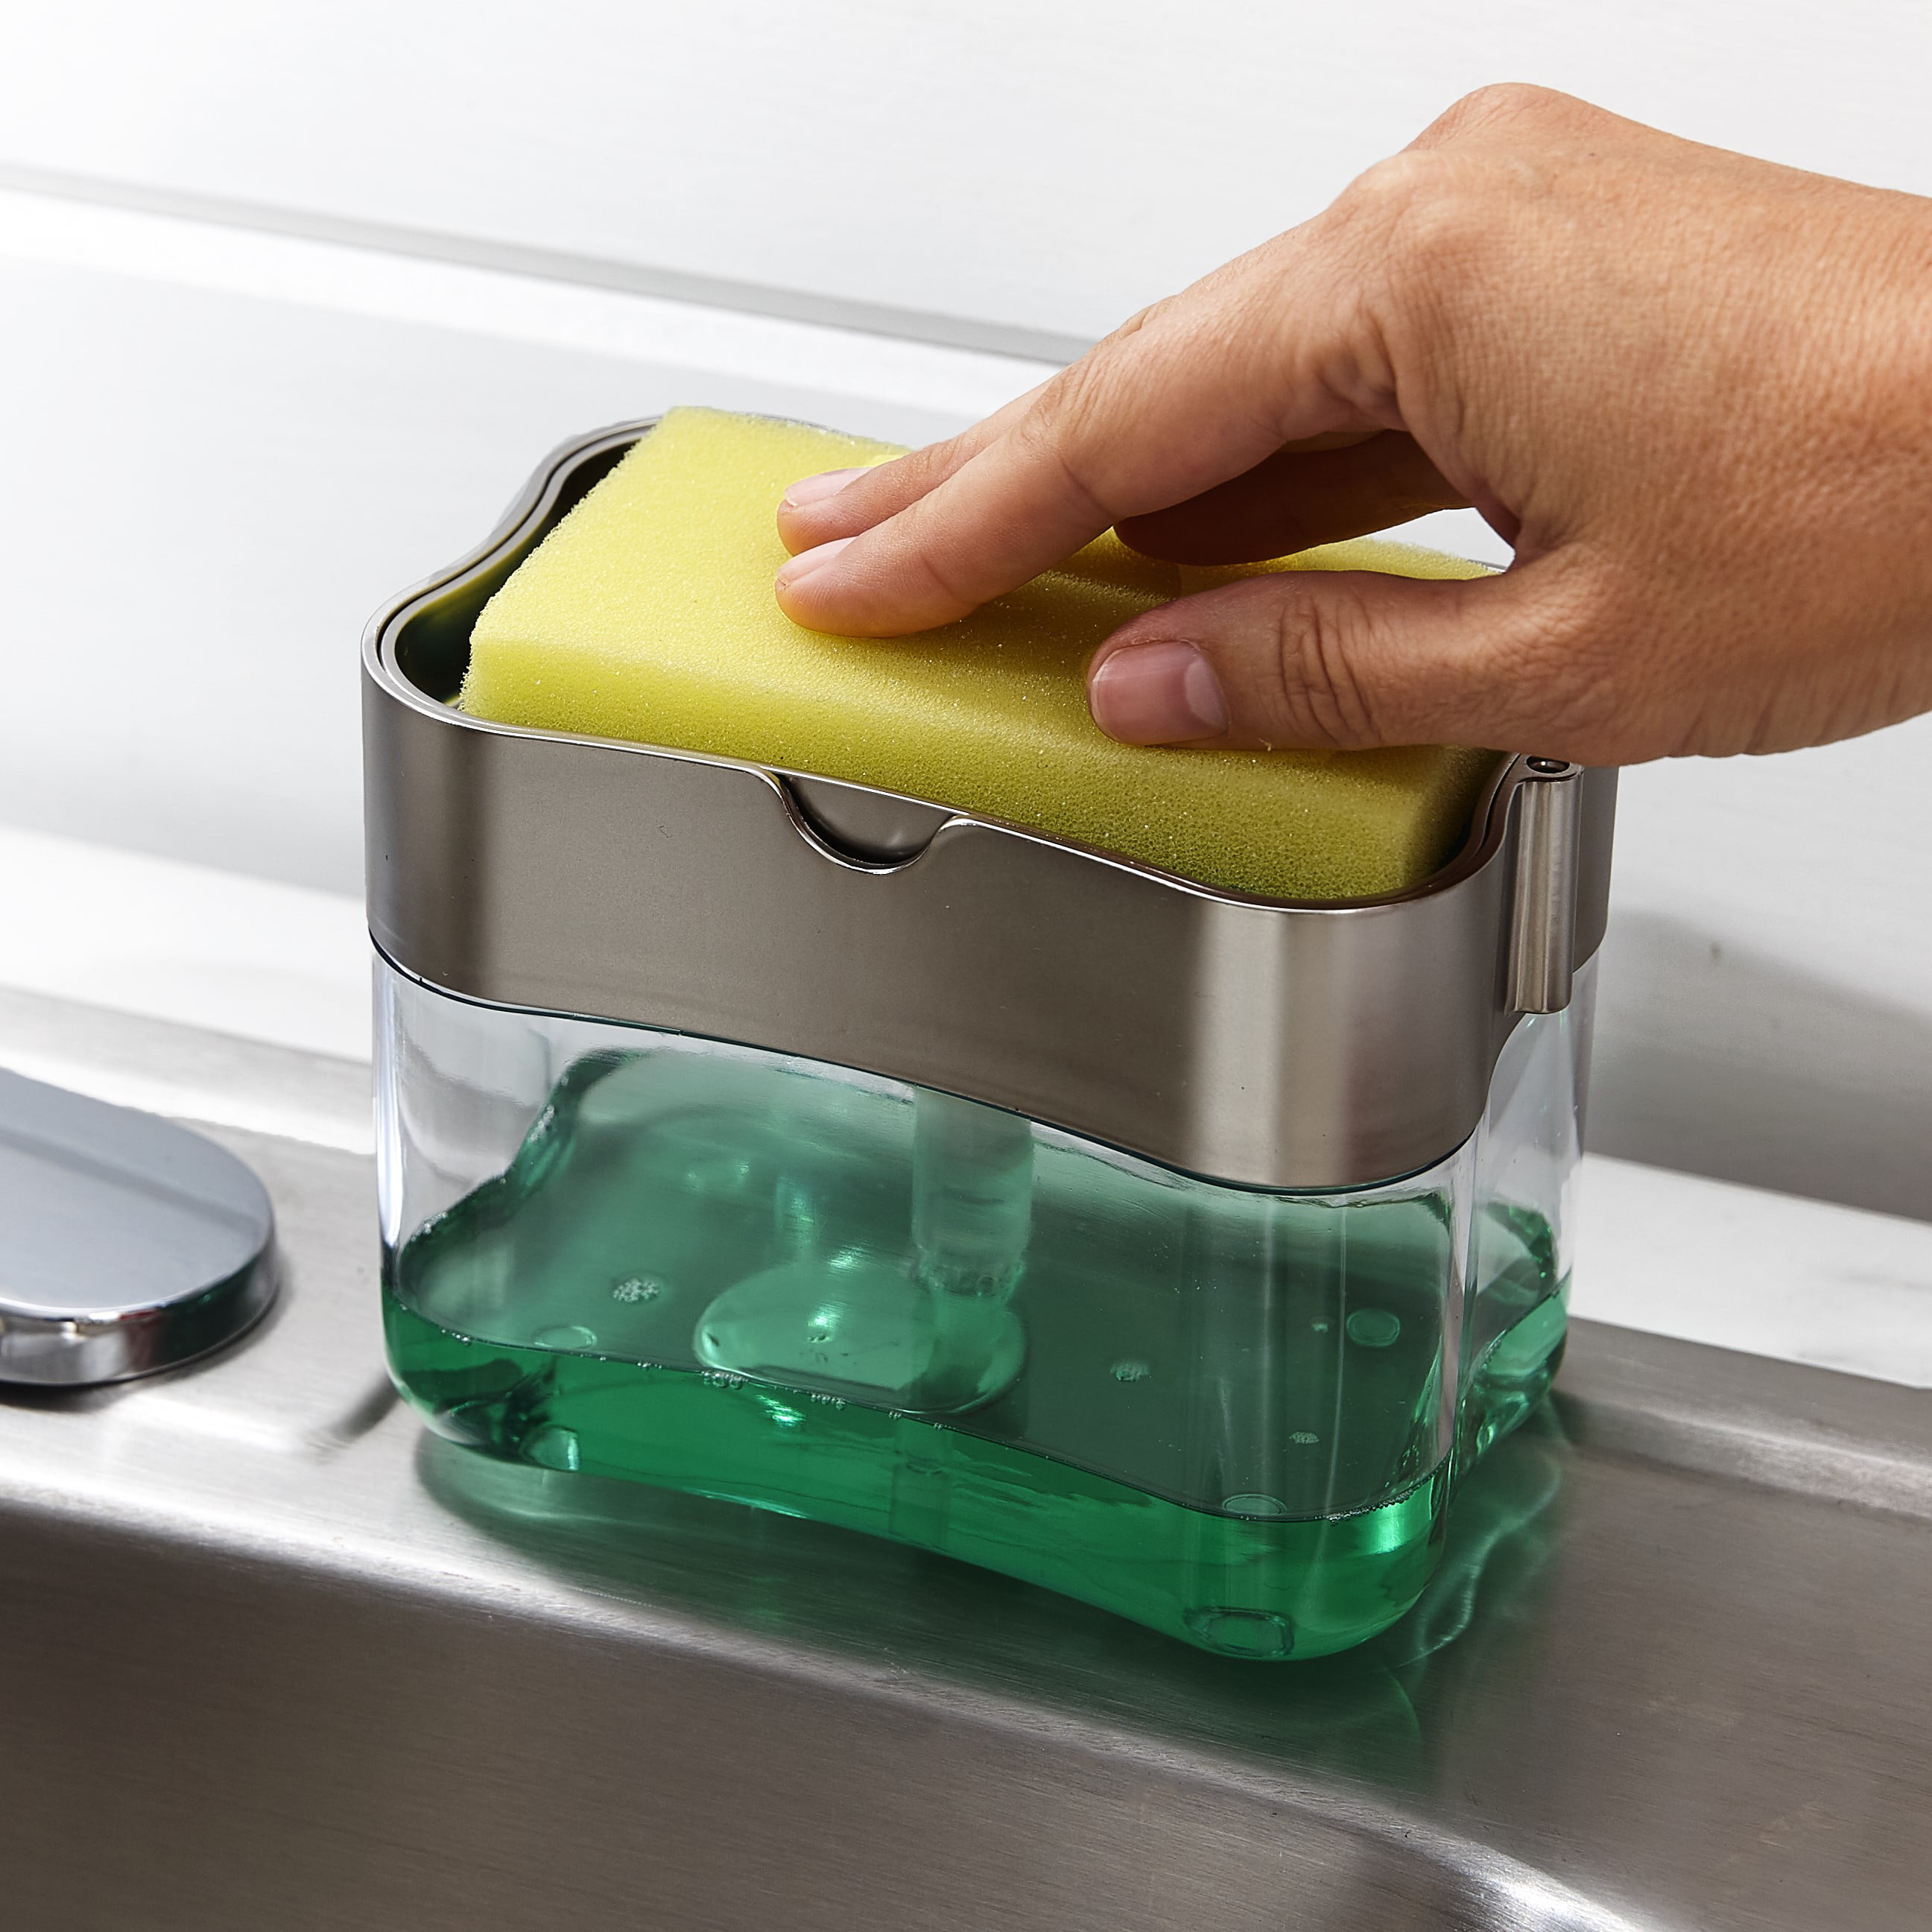 Dish soap dispenser + sponge holder $6+